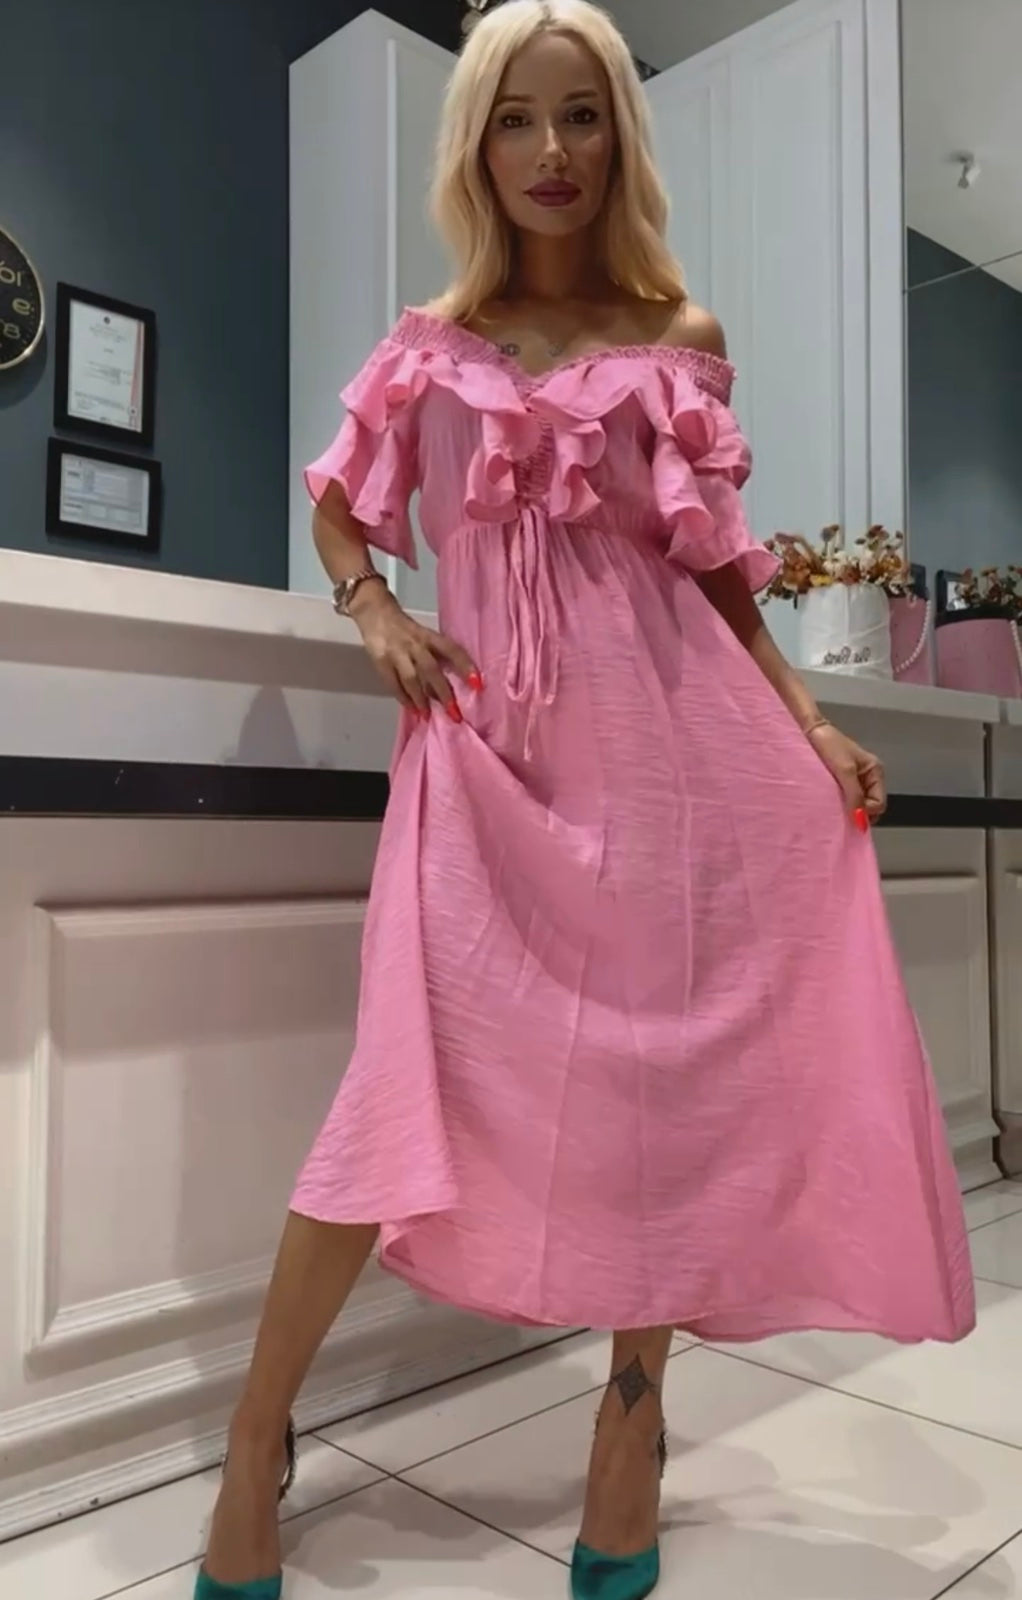 Дамска рокля CARITA PINK  https://bvseductive.com/products/womans-s-dresses-carita-pink  ефирна дълга рокля в розов цвят модел с разкрояване в долната част идеален избор за Вашата женствена визия 85% памук 15% полиестер